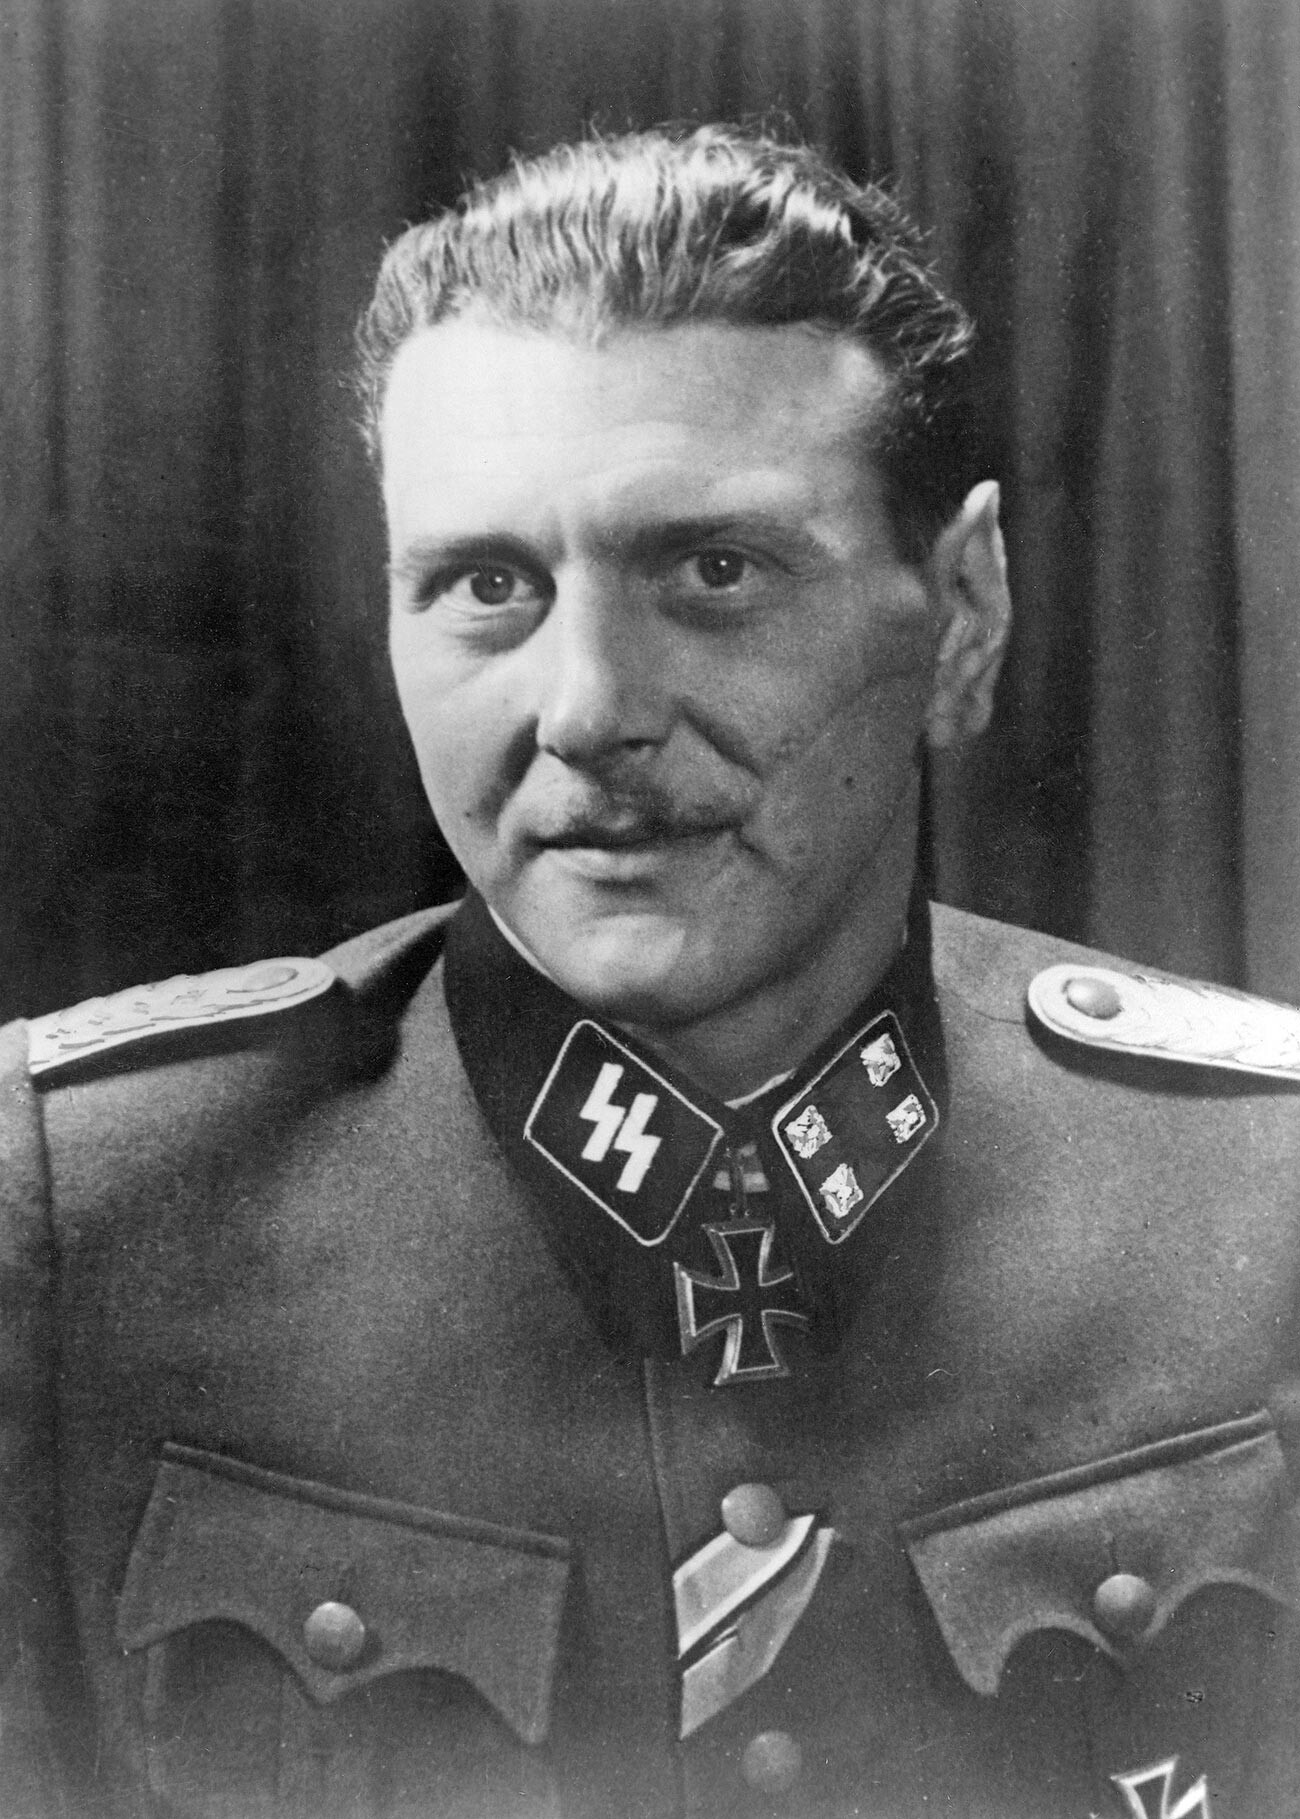 Skorzeny als Sturmbannführer im Jahr 1943.